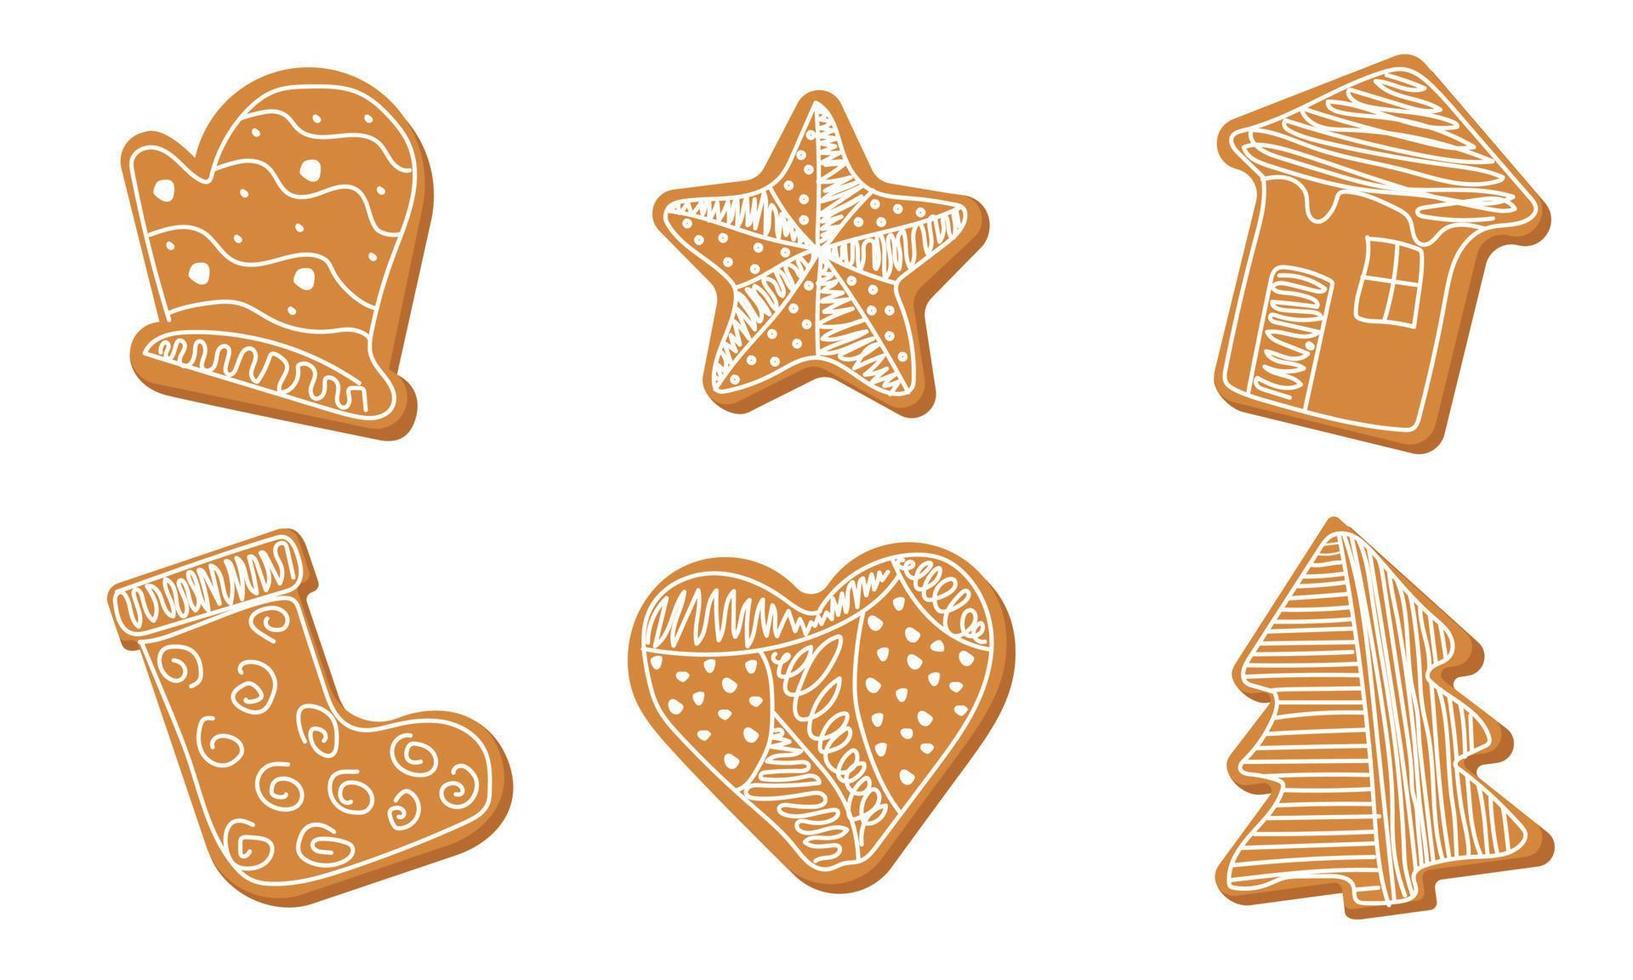 juego de pan de jengibre con decoración navideña. manopla, estrella, casa, bota, corazón, abeto como galleta, postre dulce. ilustración vectorial vector